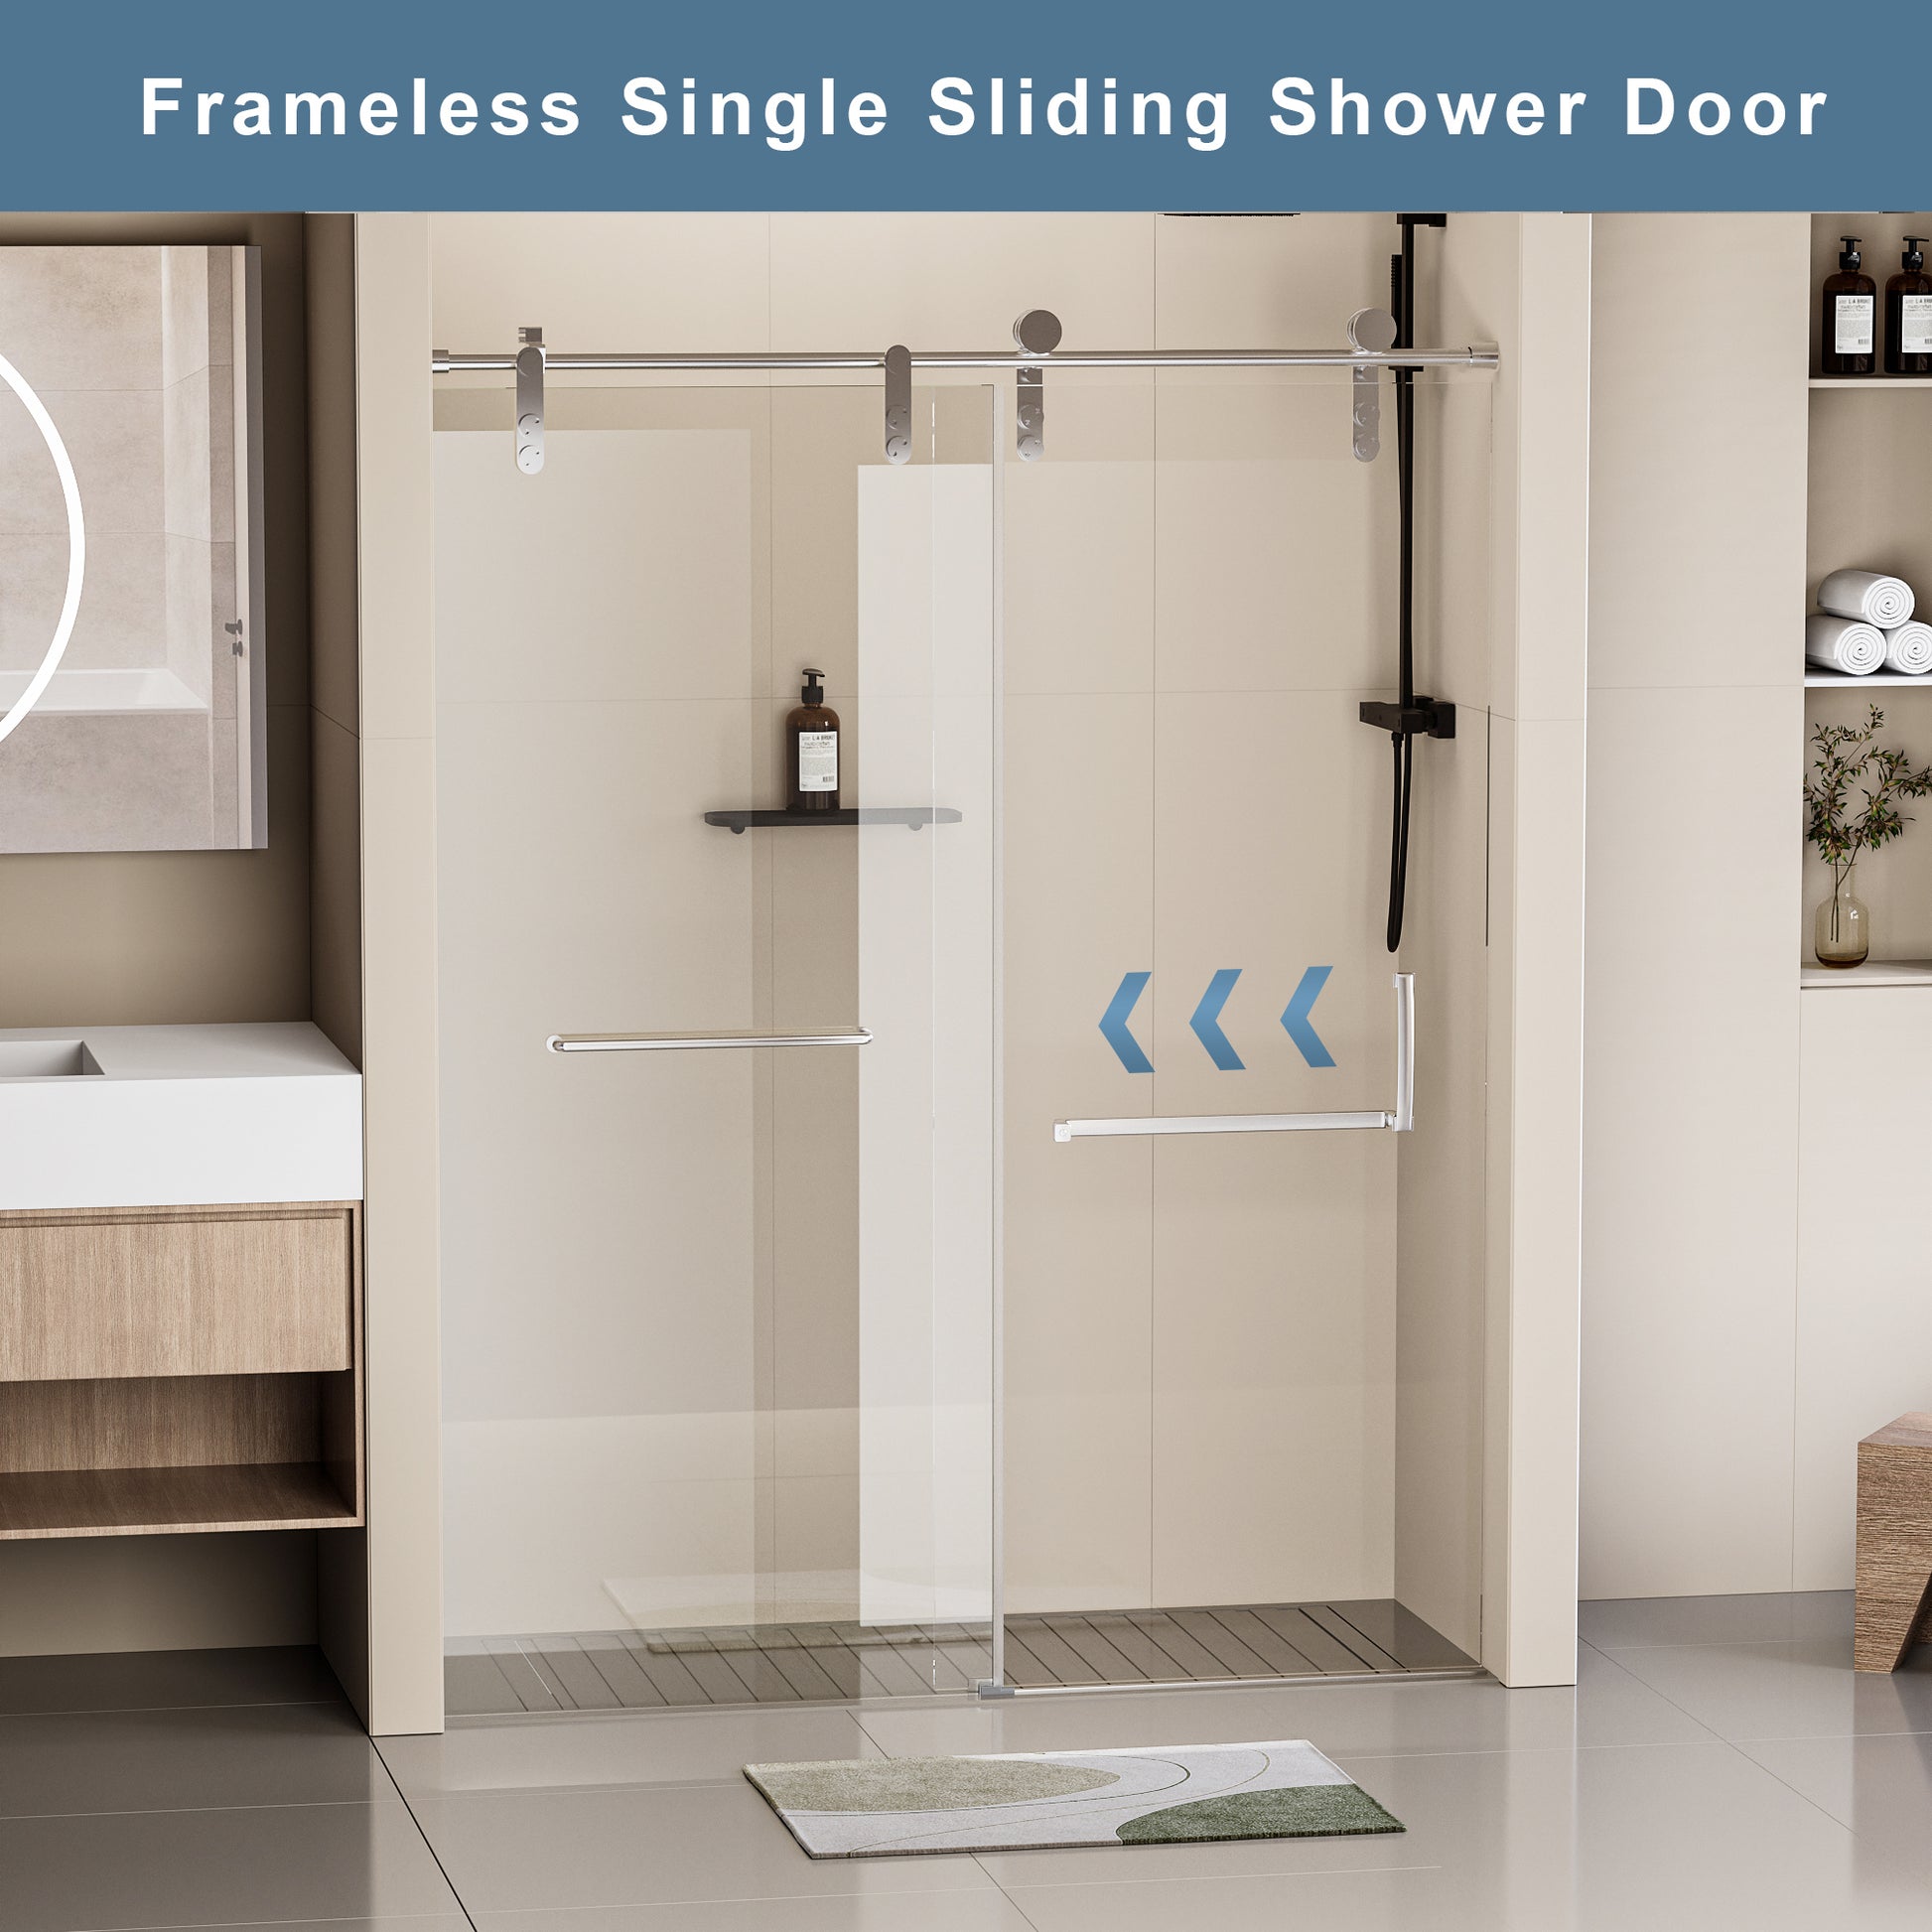 Stainless Steel Shower Door Hardware & Handles,